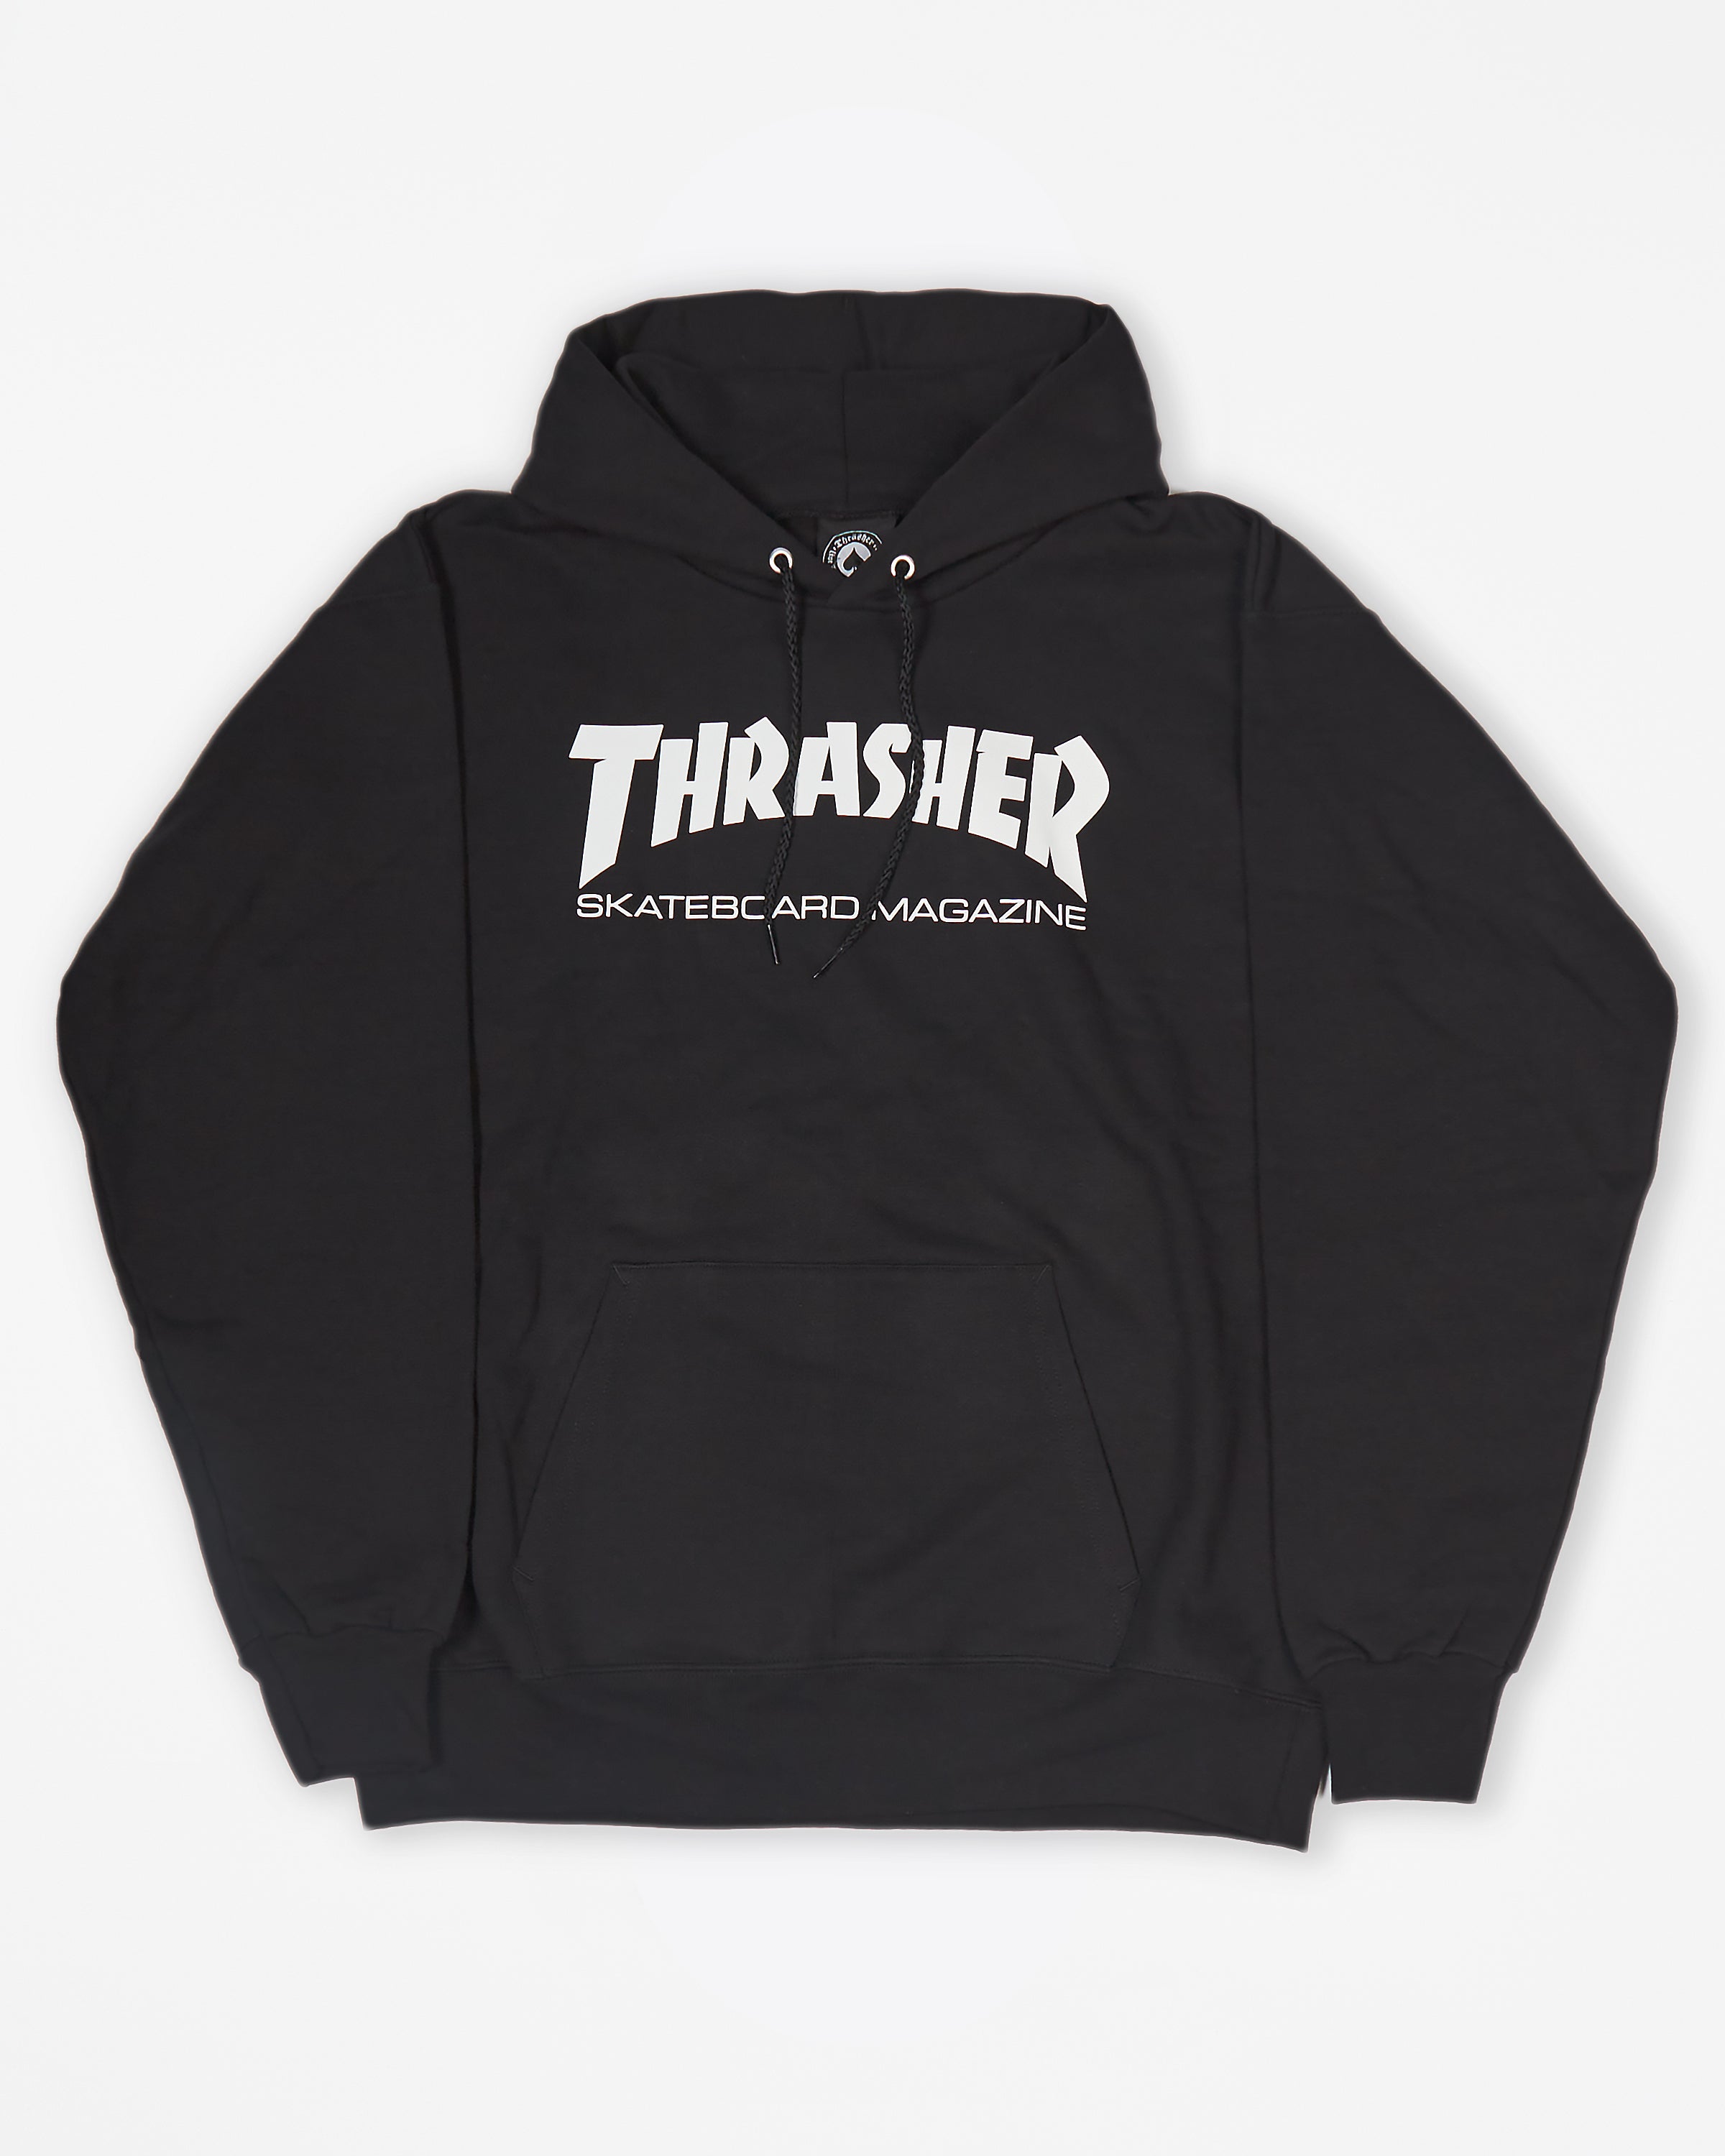 Thrasher - Thrasher Magazine Black Hoodie